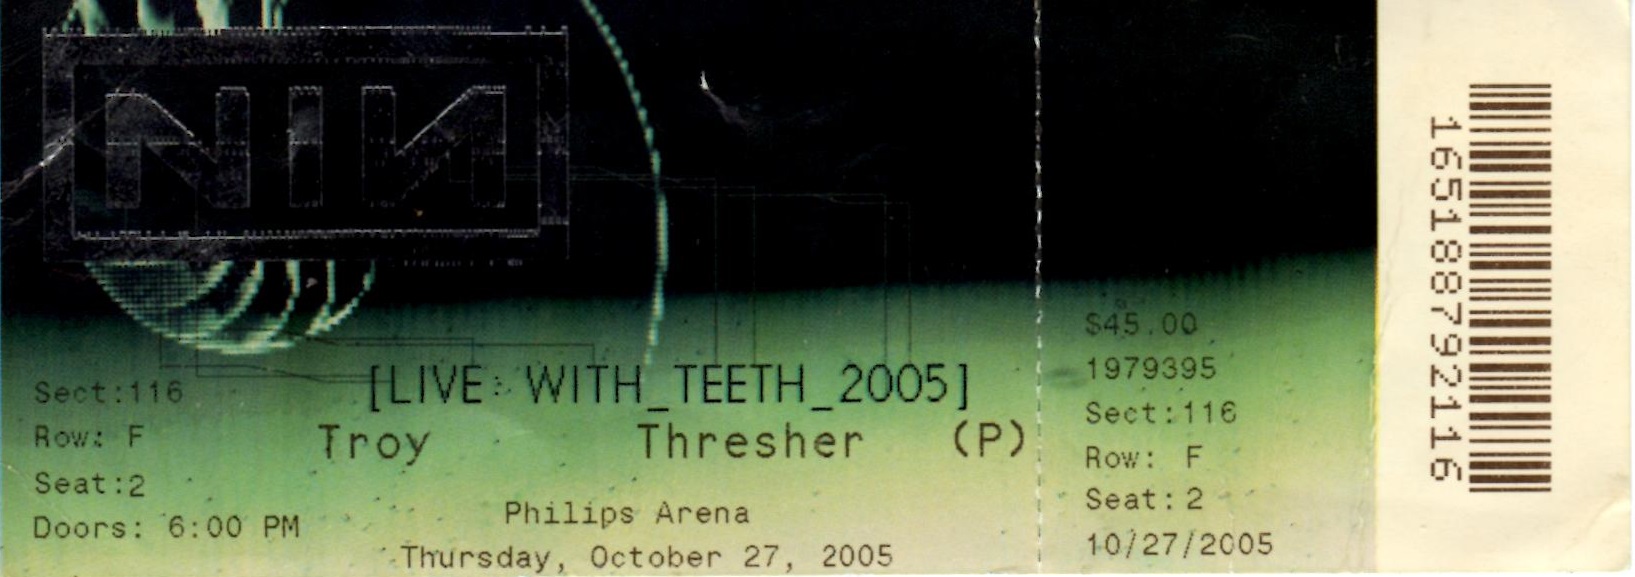 Atlanta 10/27/2005 Ticket